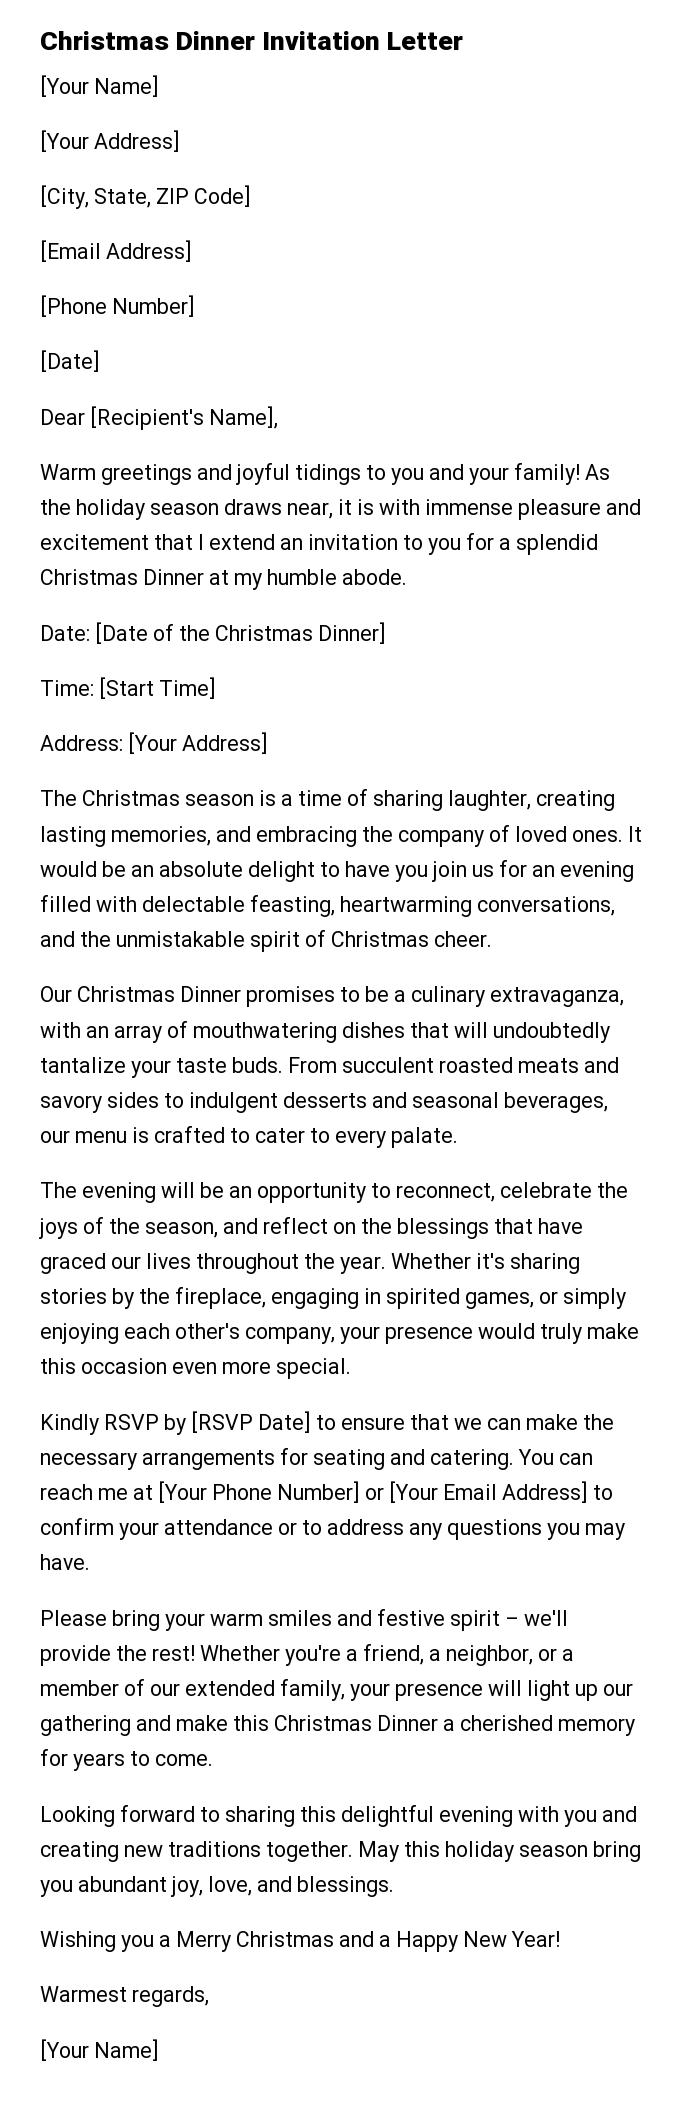 Christmas Dinner Invitation Letter